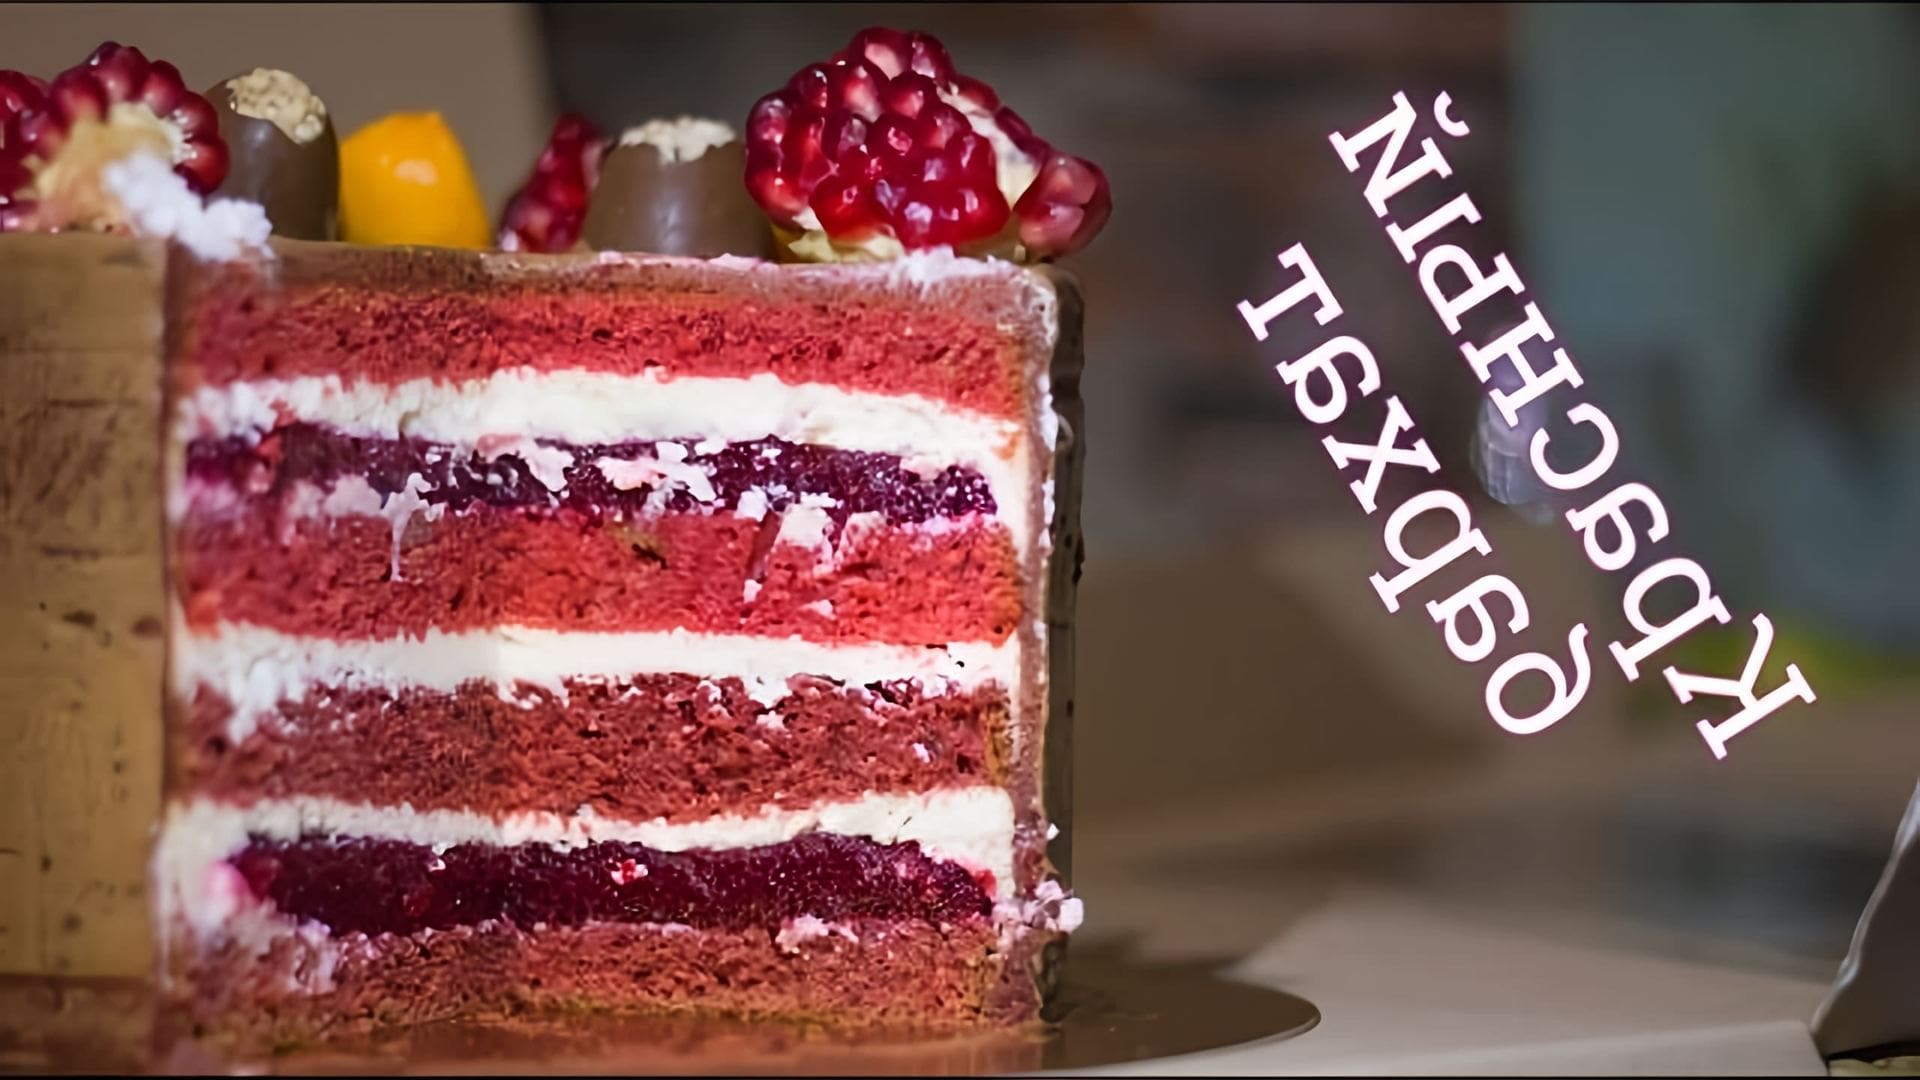 В этом видео демонстрируется рецепт приготовления торта "Красный бархат" с необычной начинкой